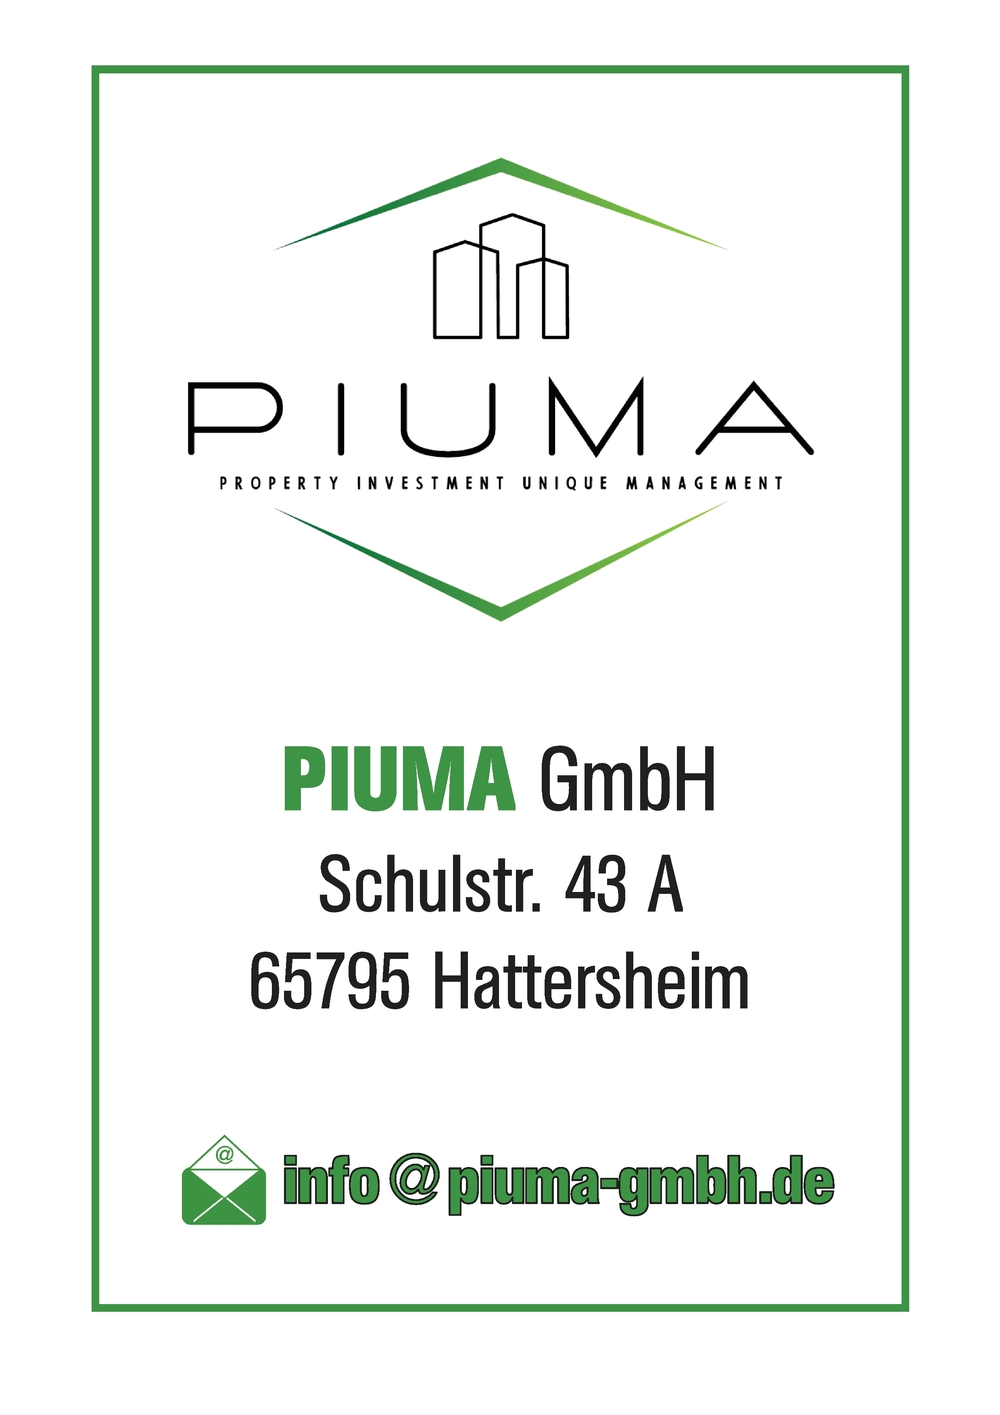 Piuma GmbH